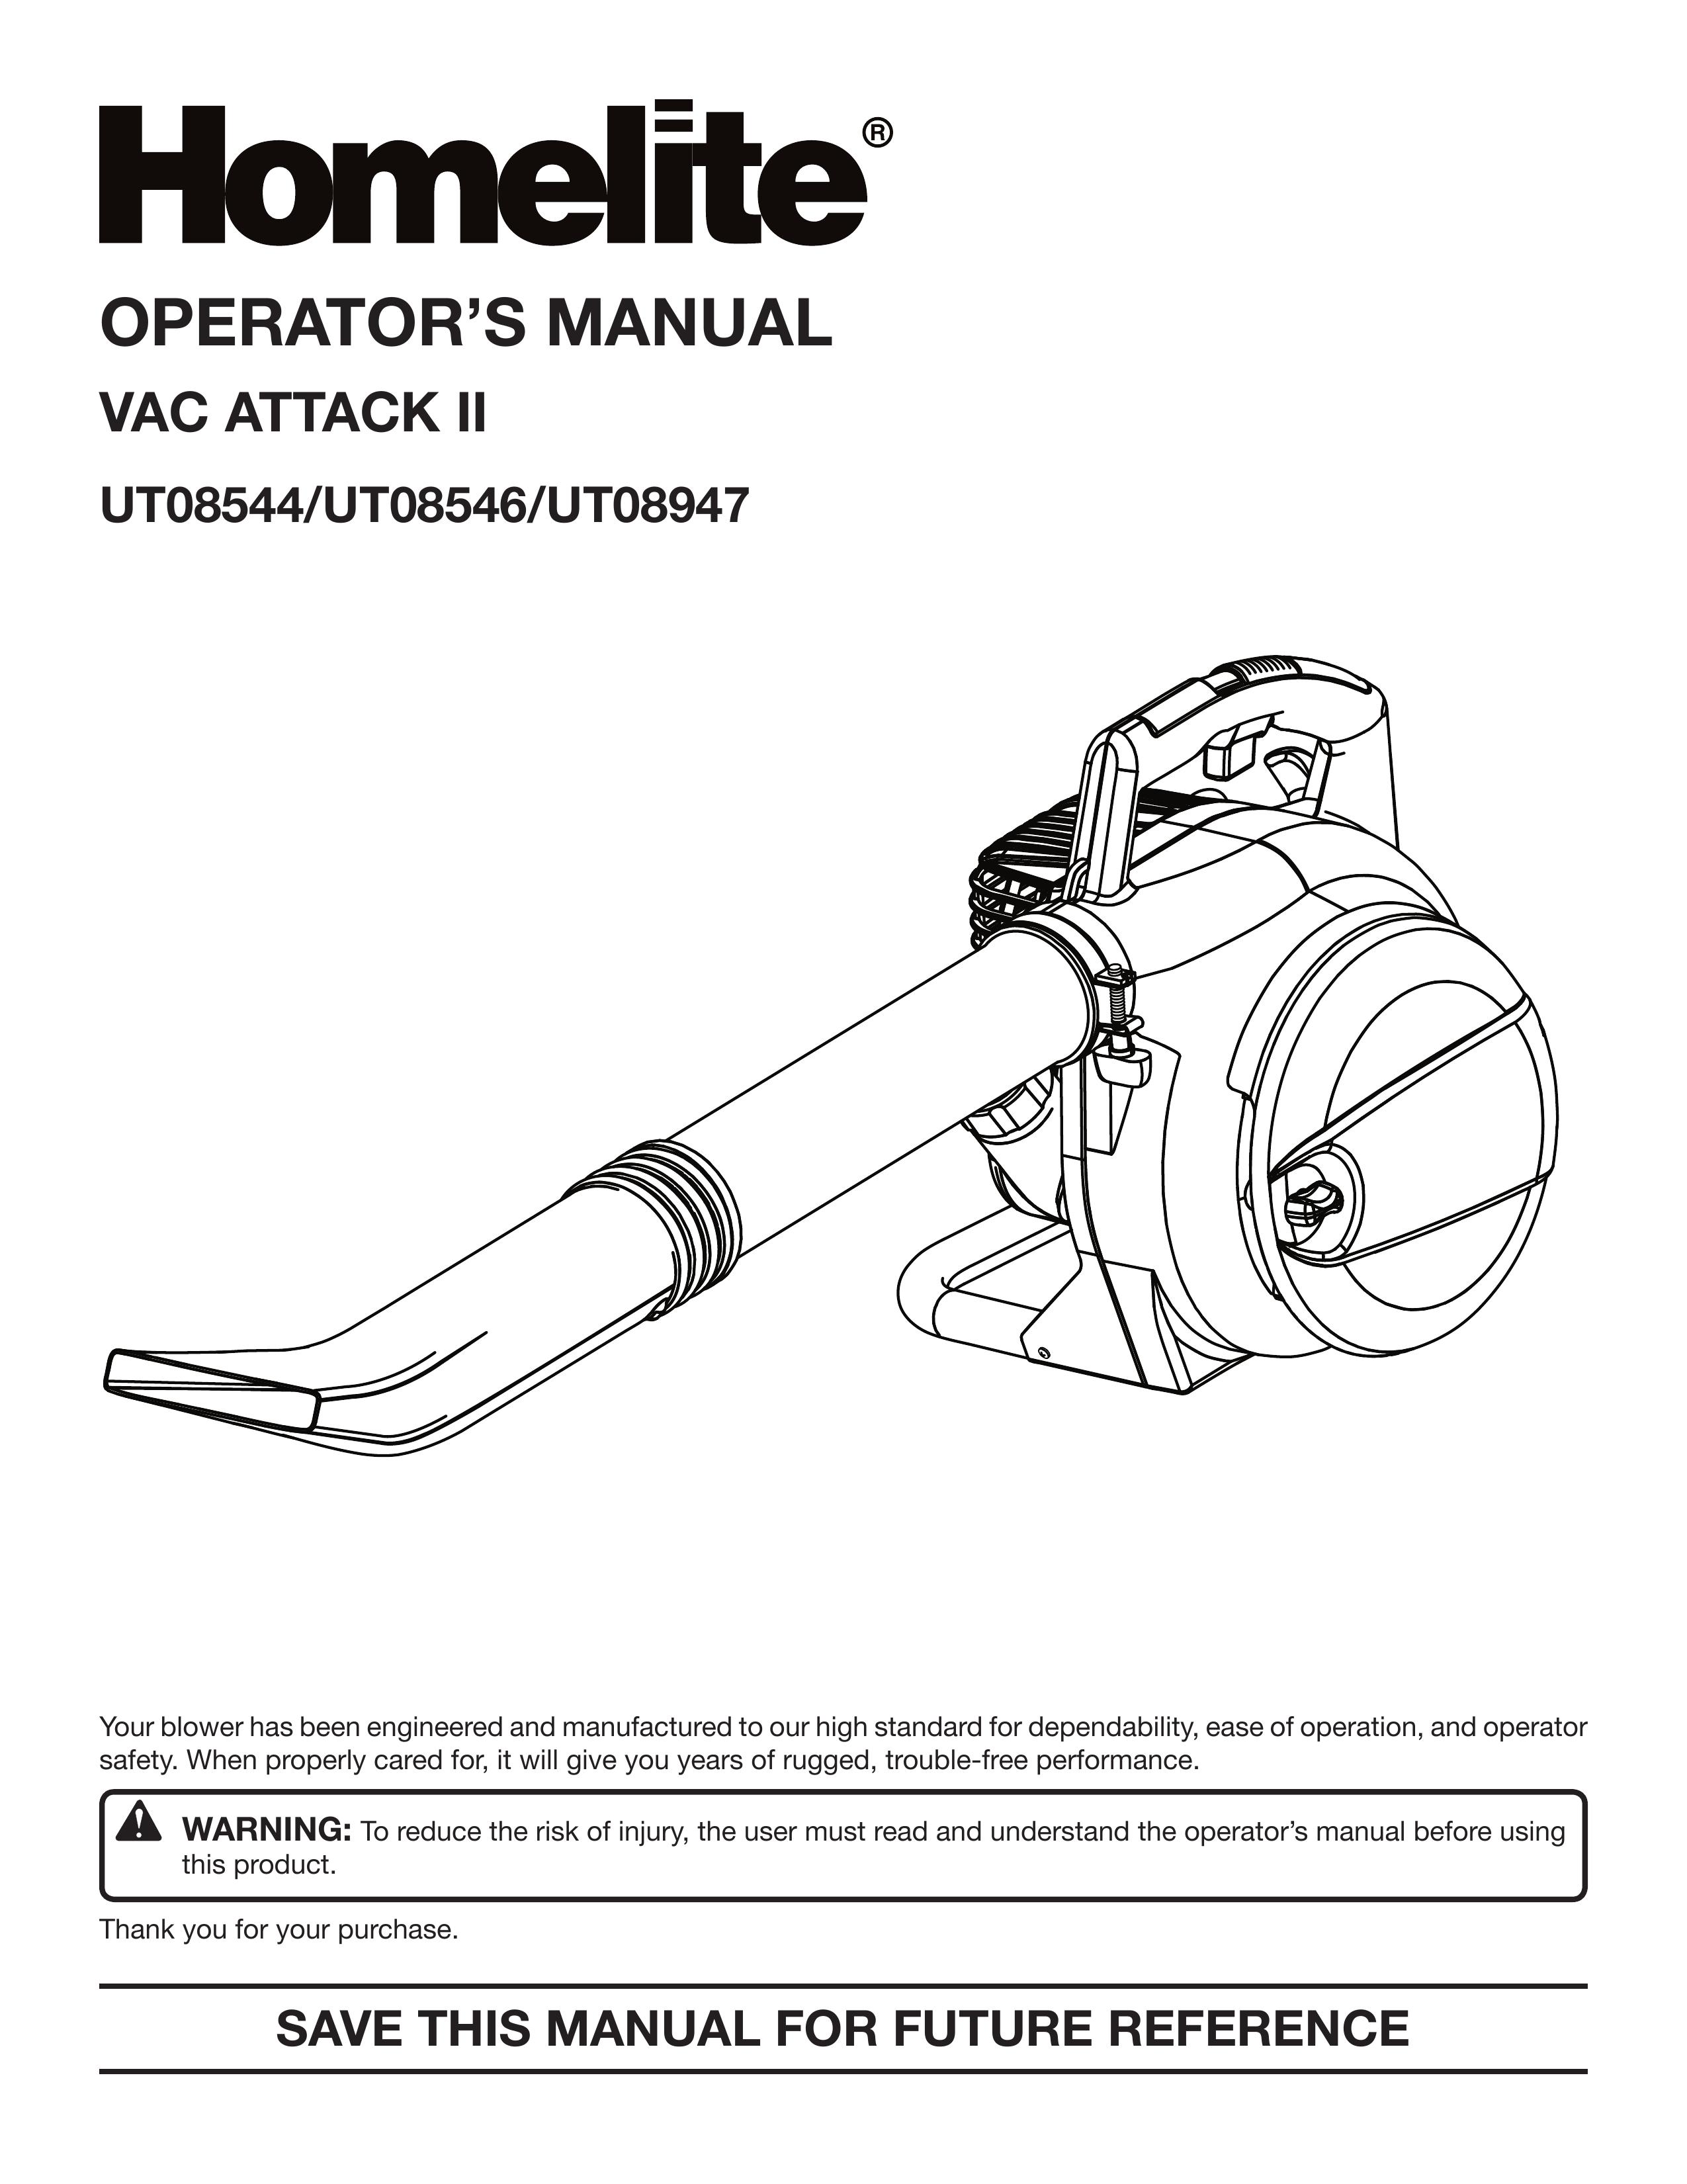 Homelite UT08947 Blower User Manual